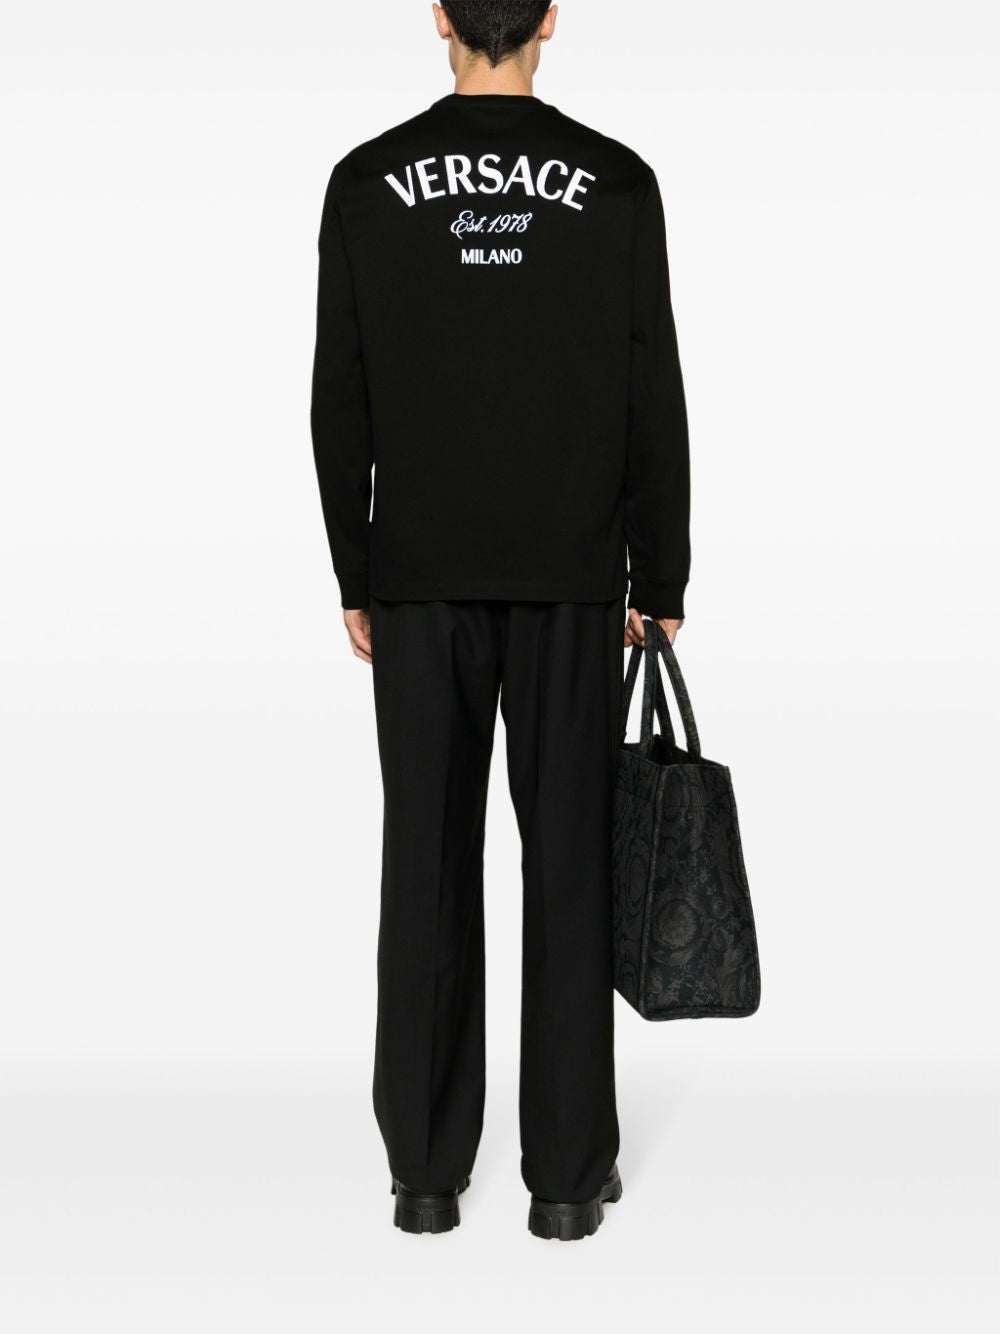 Áo thun dài tay Versace với họa tiết đóng dấu Milan cho nam giới